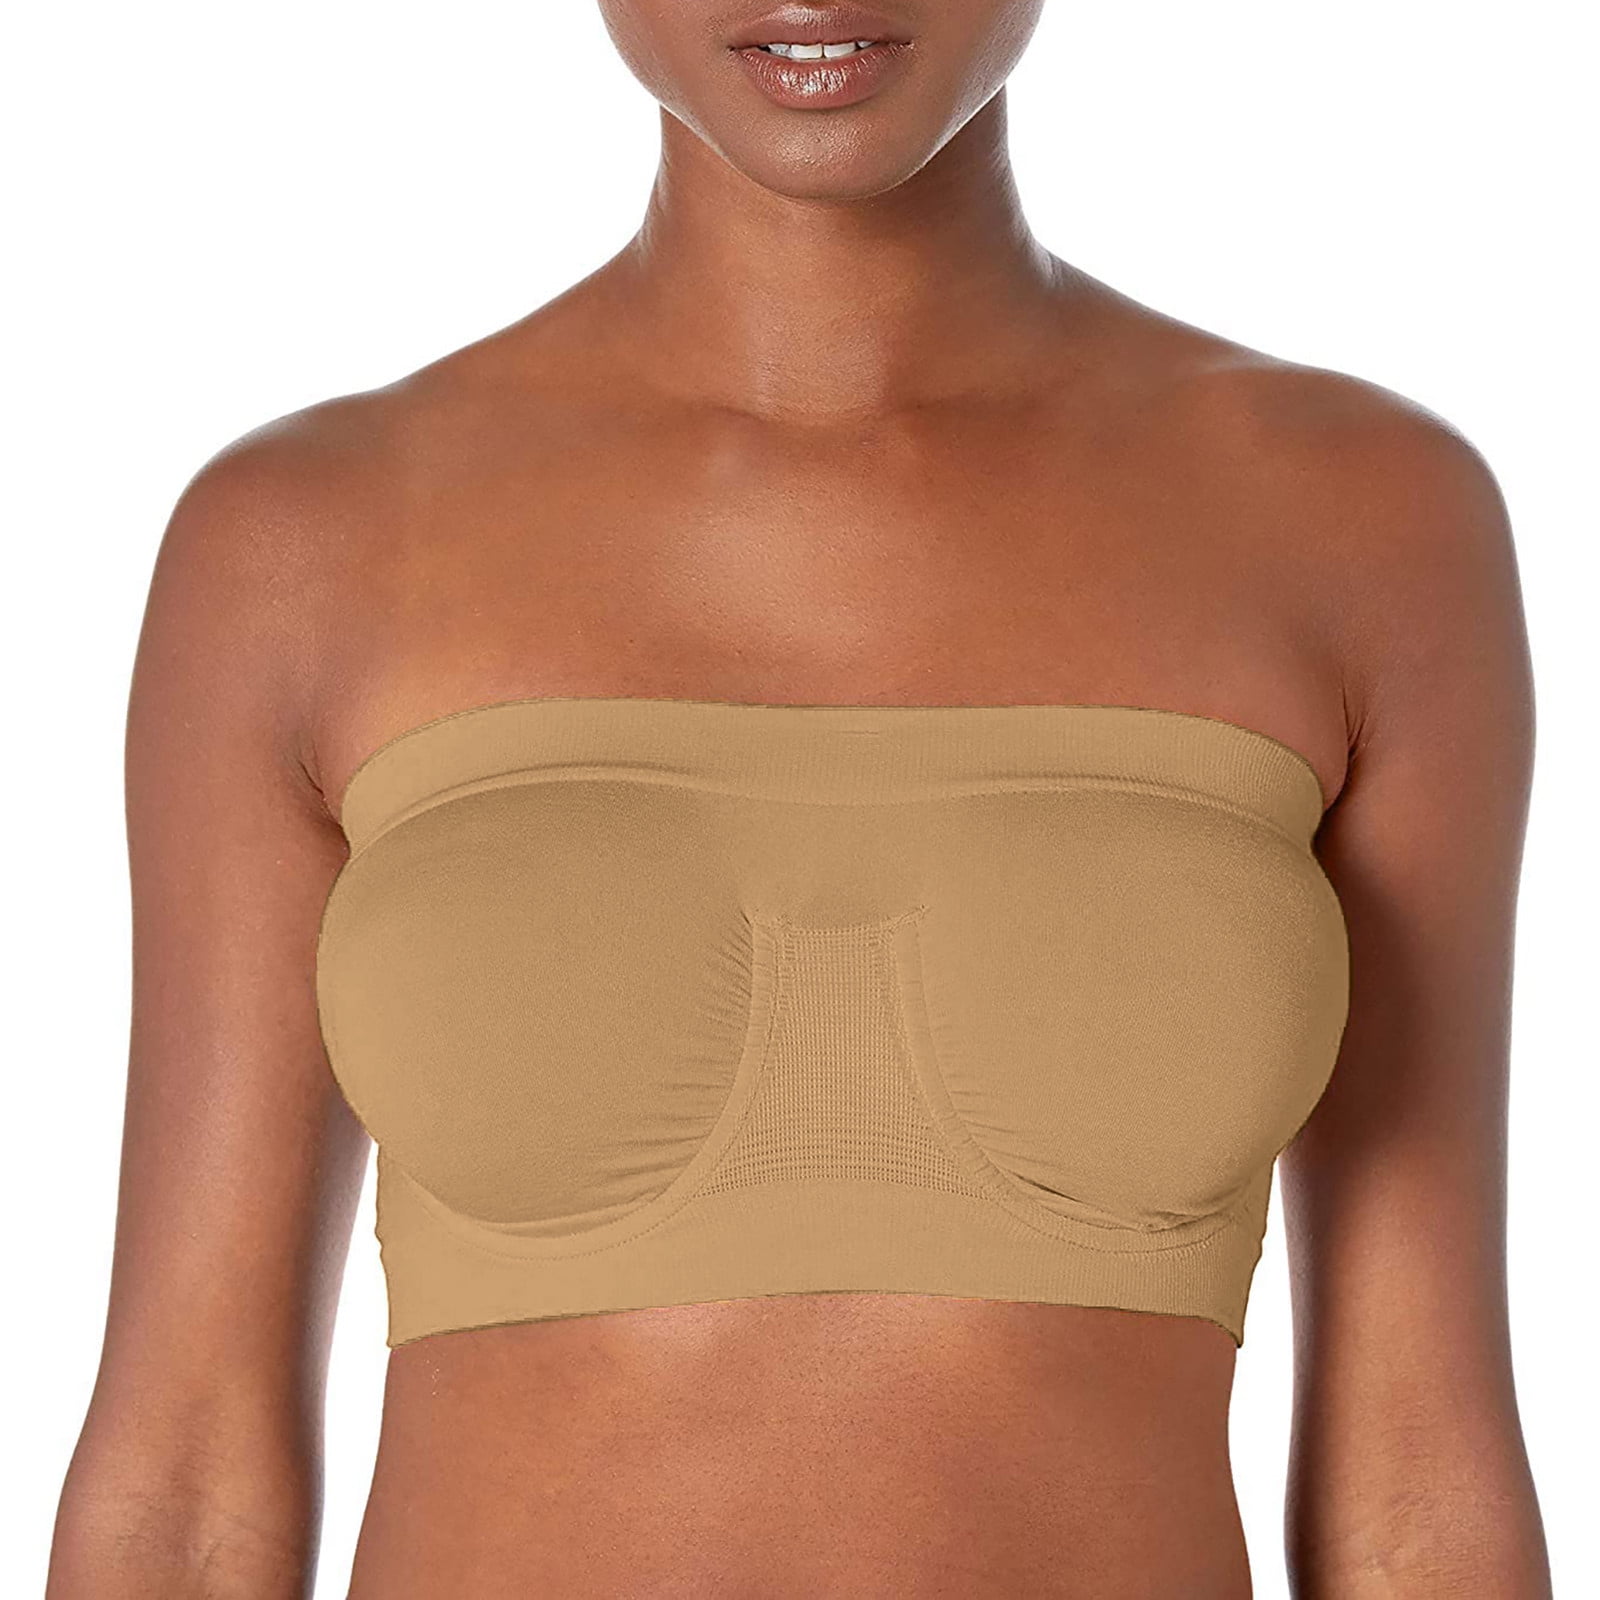 Plus Size Strapless Bra for Women Invisible Bras Comfort Non-Slip